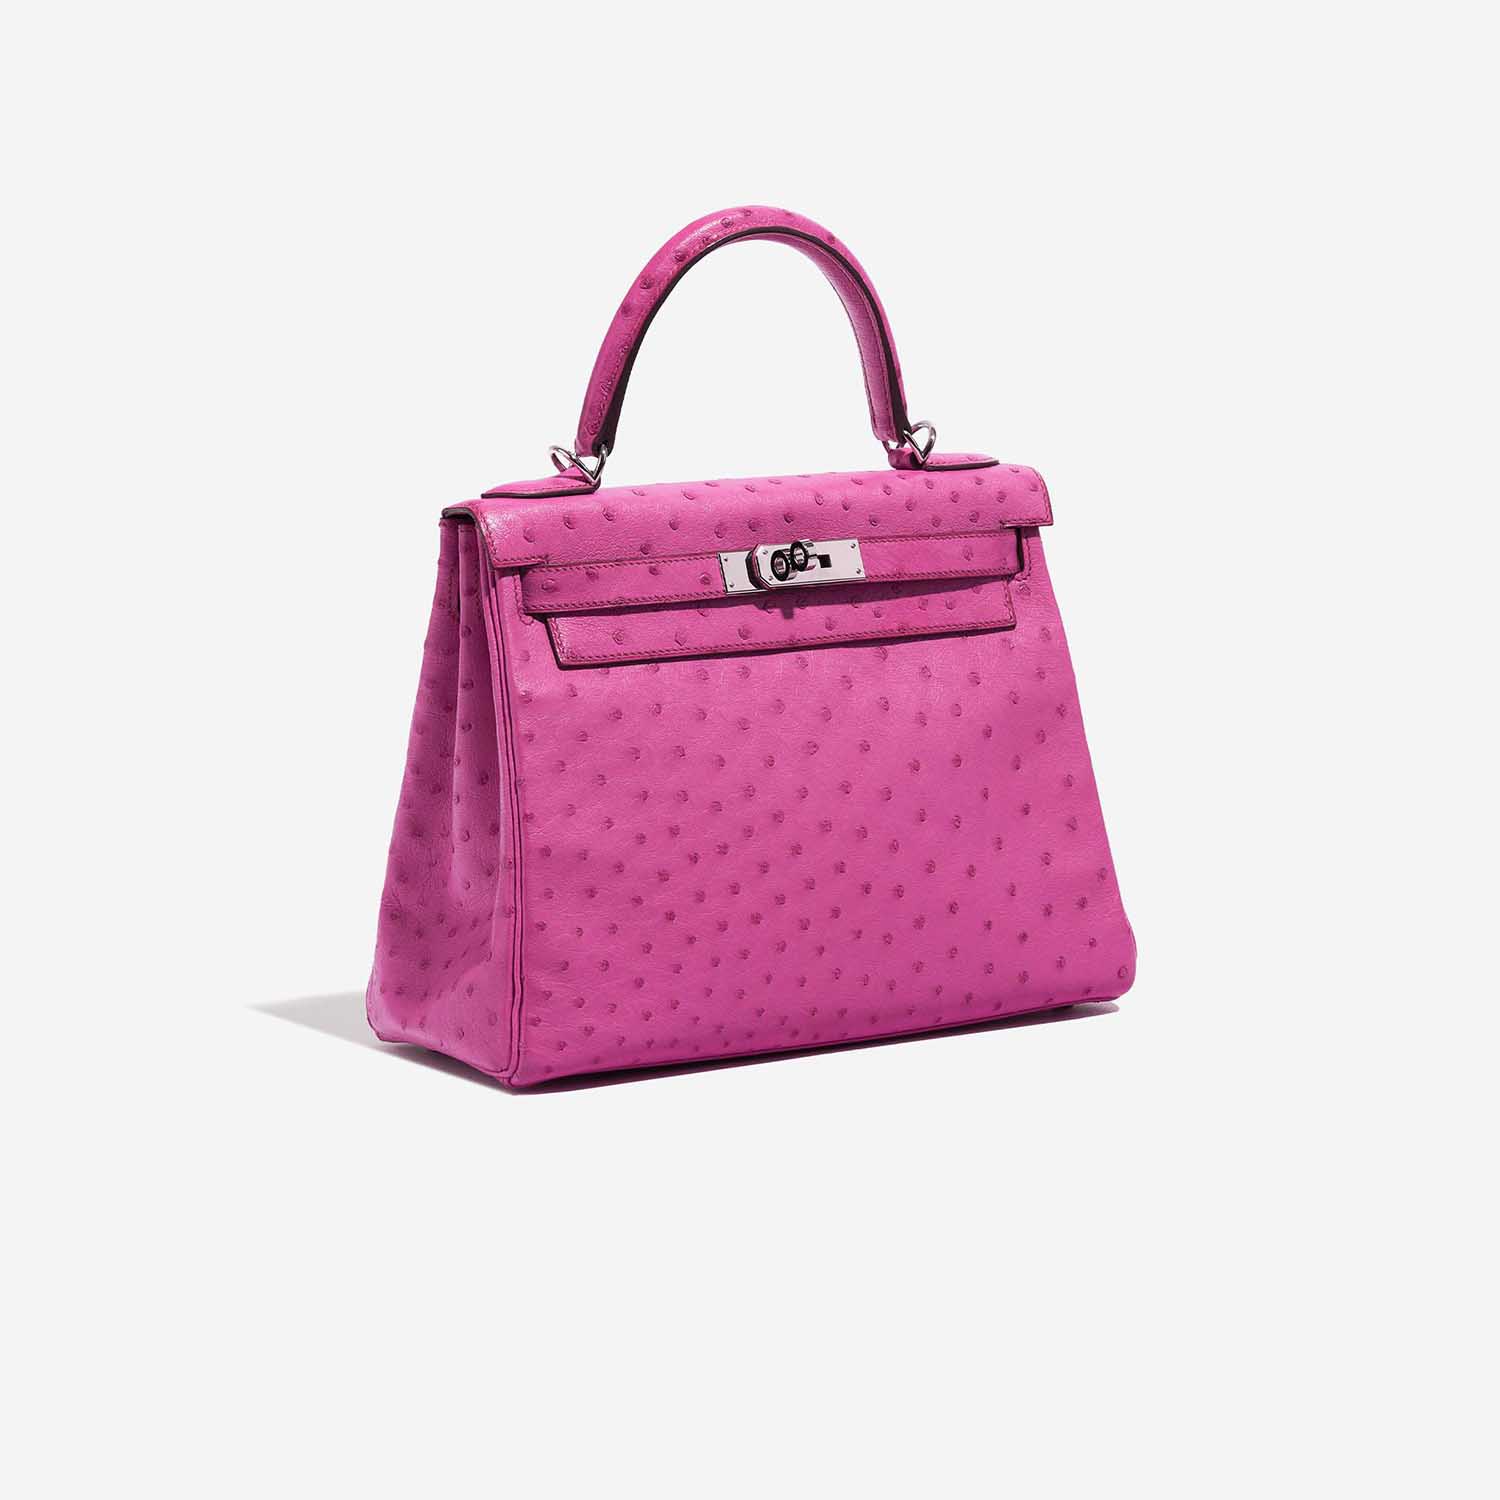 Pre-owned Hermès Tasche Kelly 28 Ostrich Fuchsia Pink Side Front | Verkaufen Sie Ihre Designer-Tasche auf Saclab.com